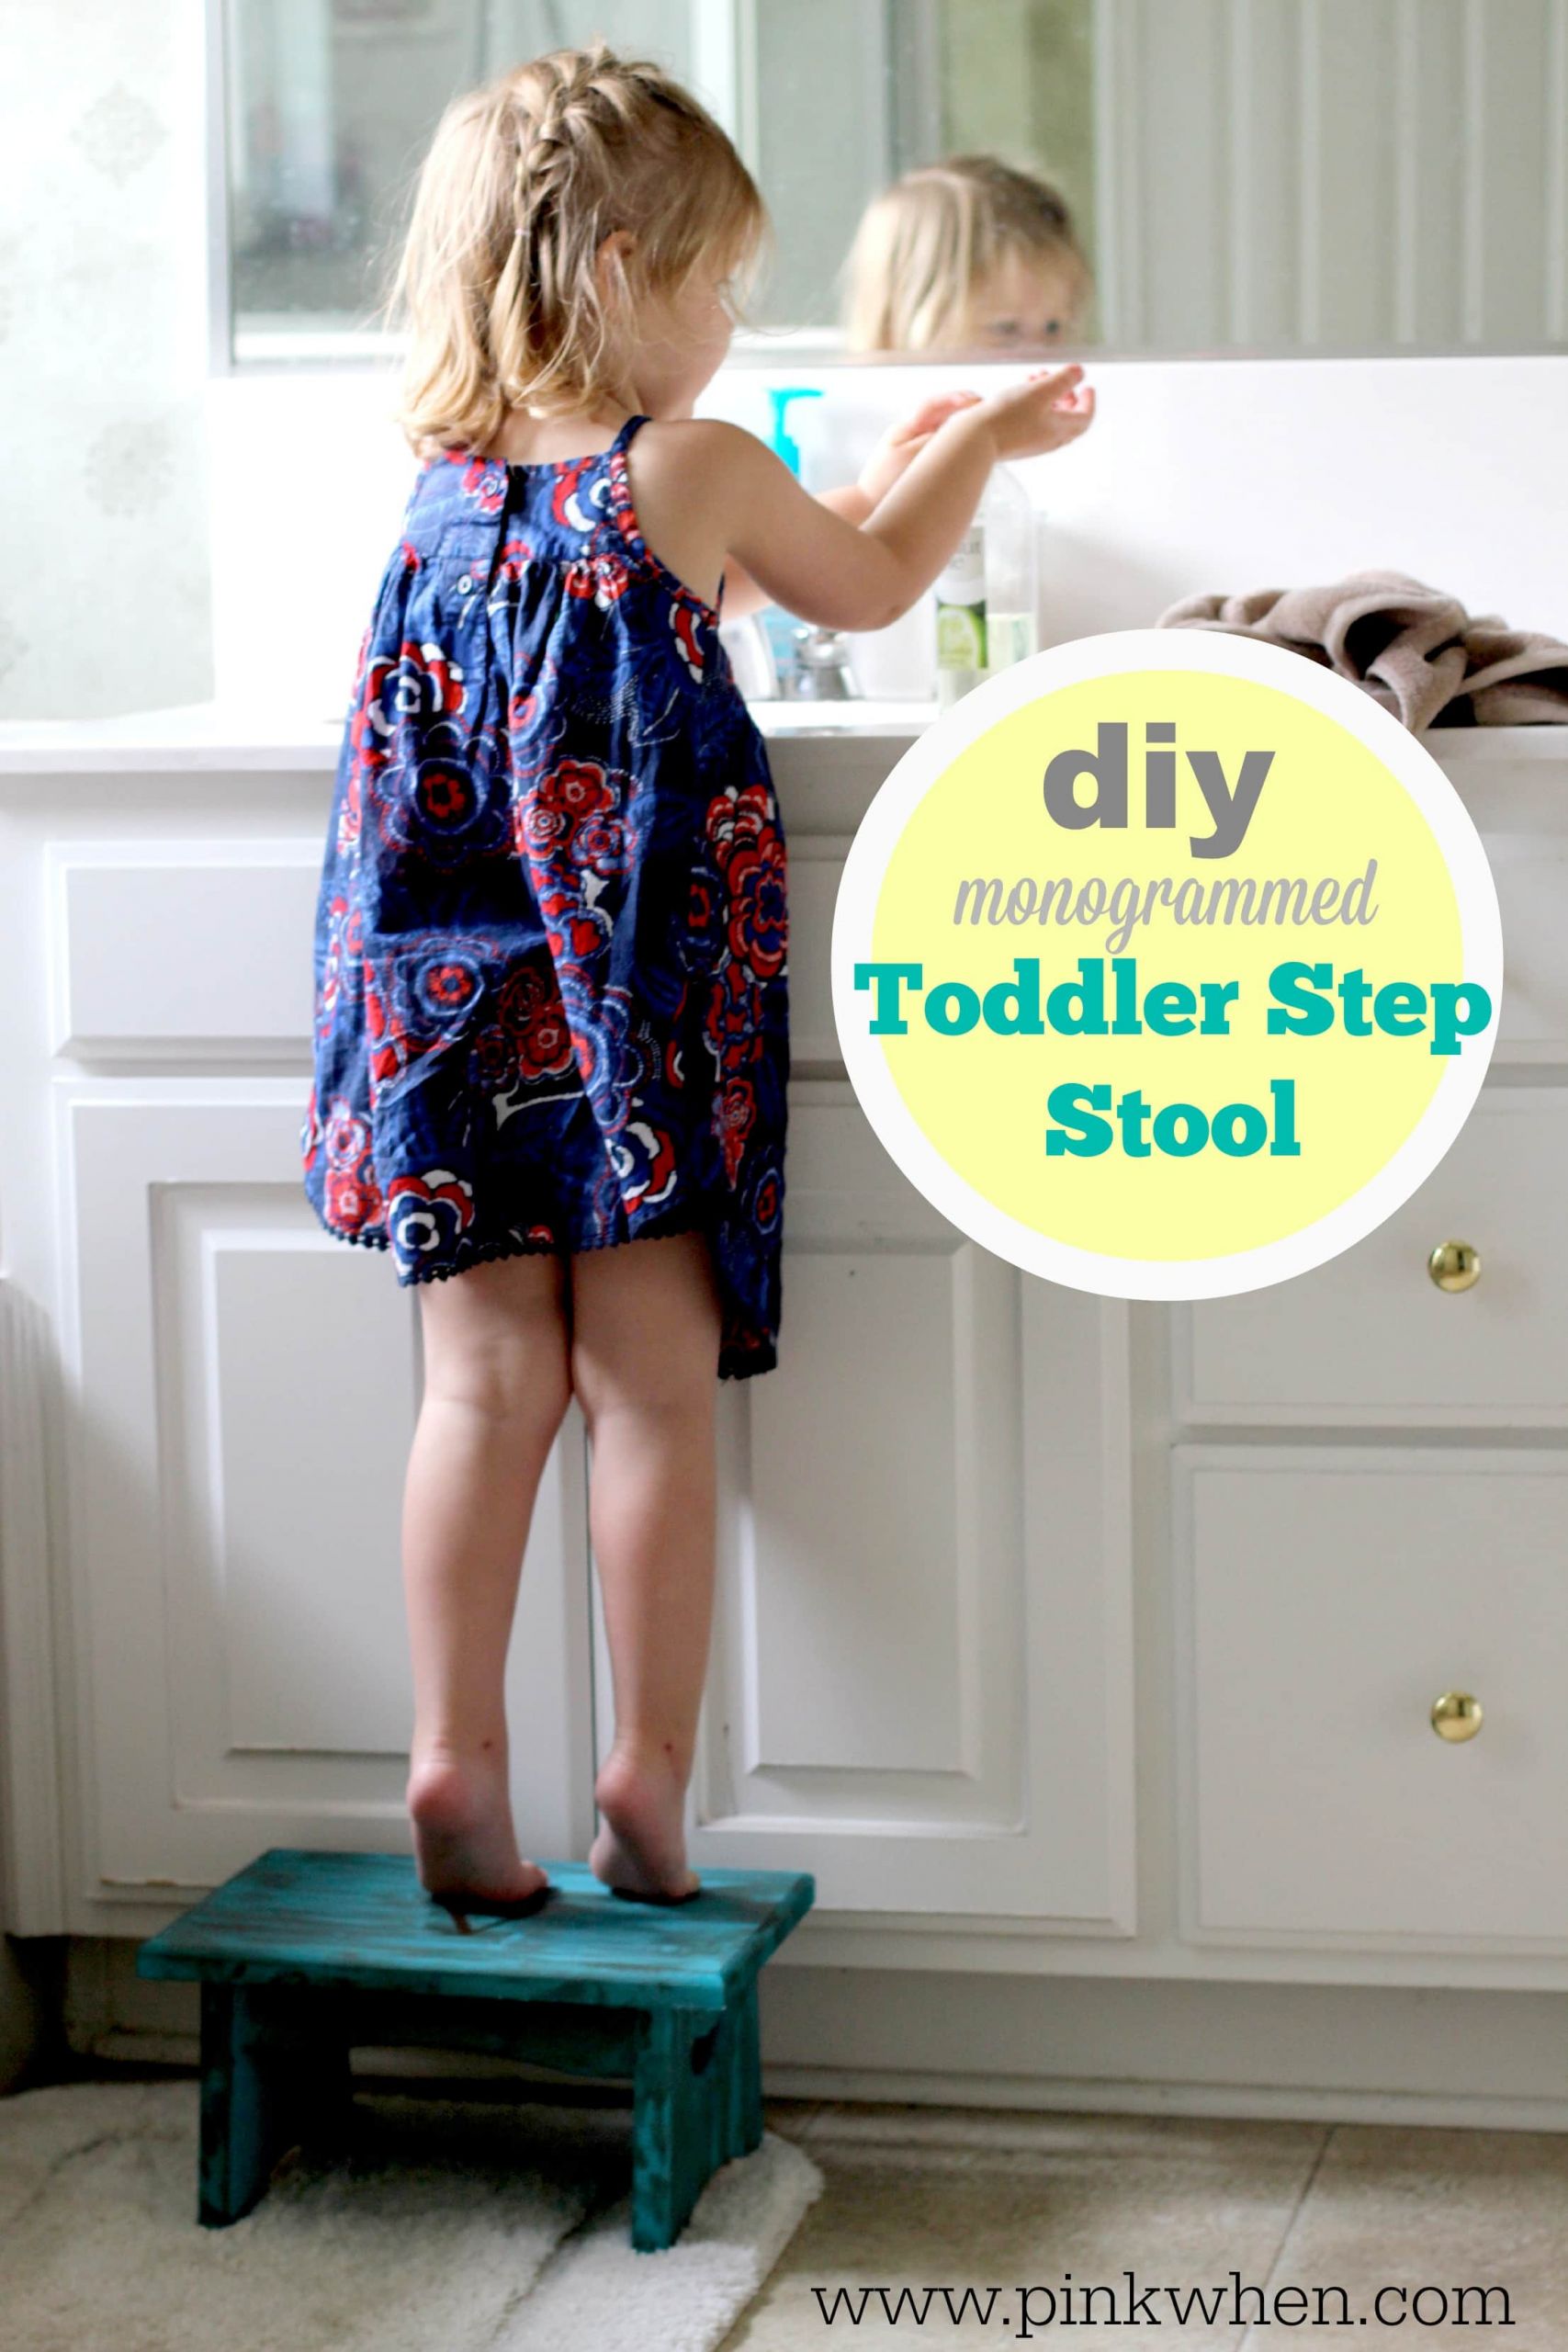 DIY Toddler Step Stool
 DIY Toddler Step Stool PinkWhen